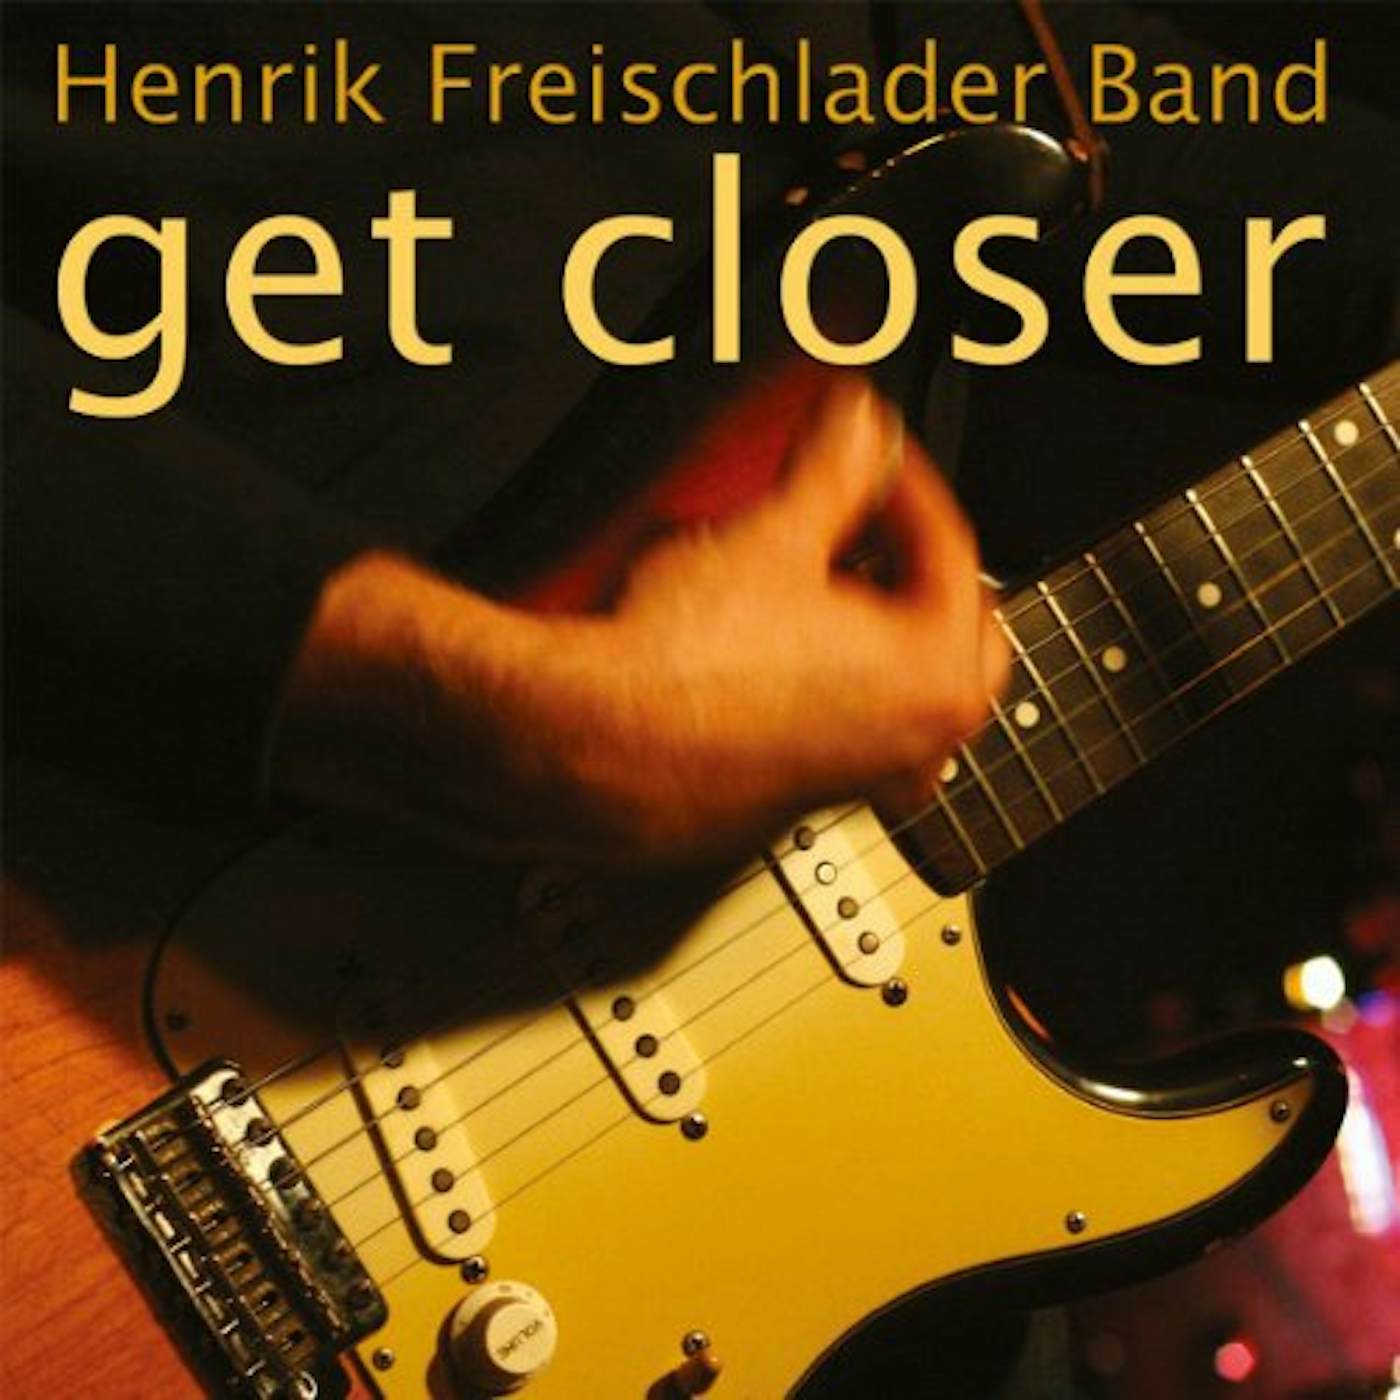 Henrik Freischlader Band Get Closer Vinyl Record